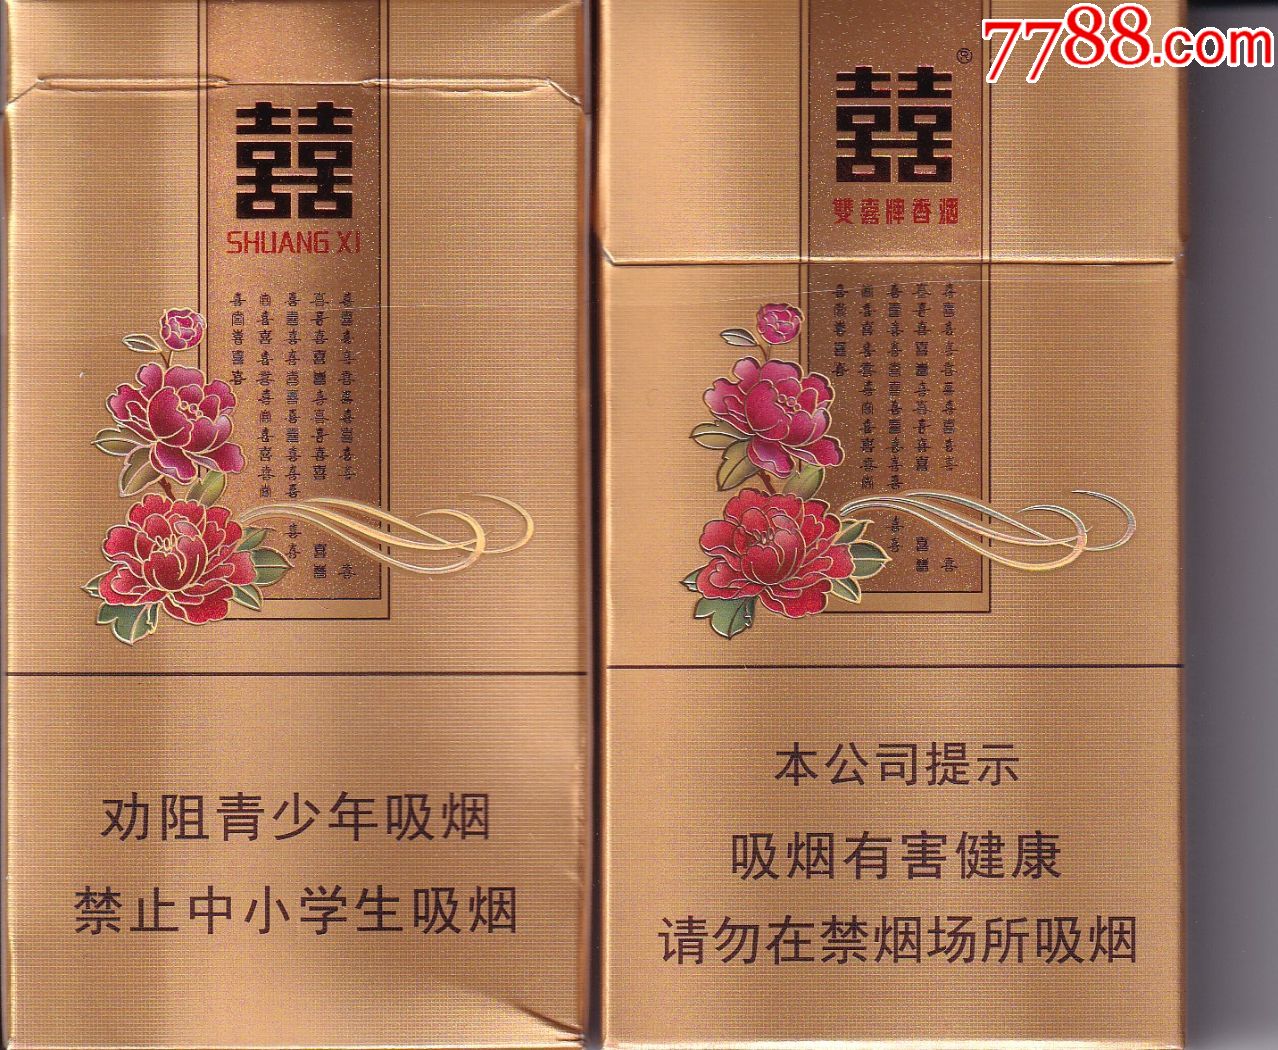 广东中烟工业公司牡丹花双喜牌细支庄20枝拆包标硬卡商标正面图